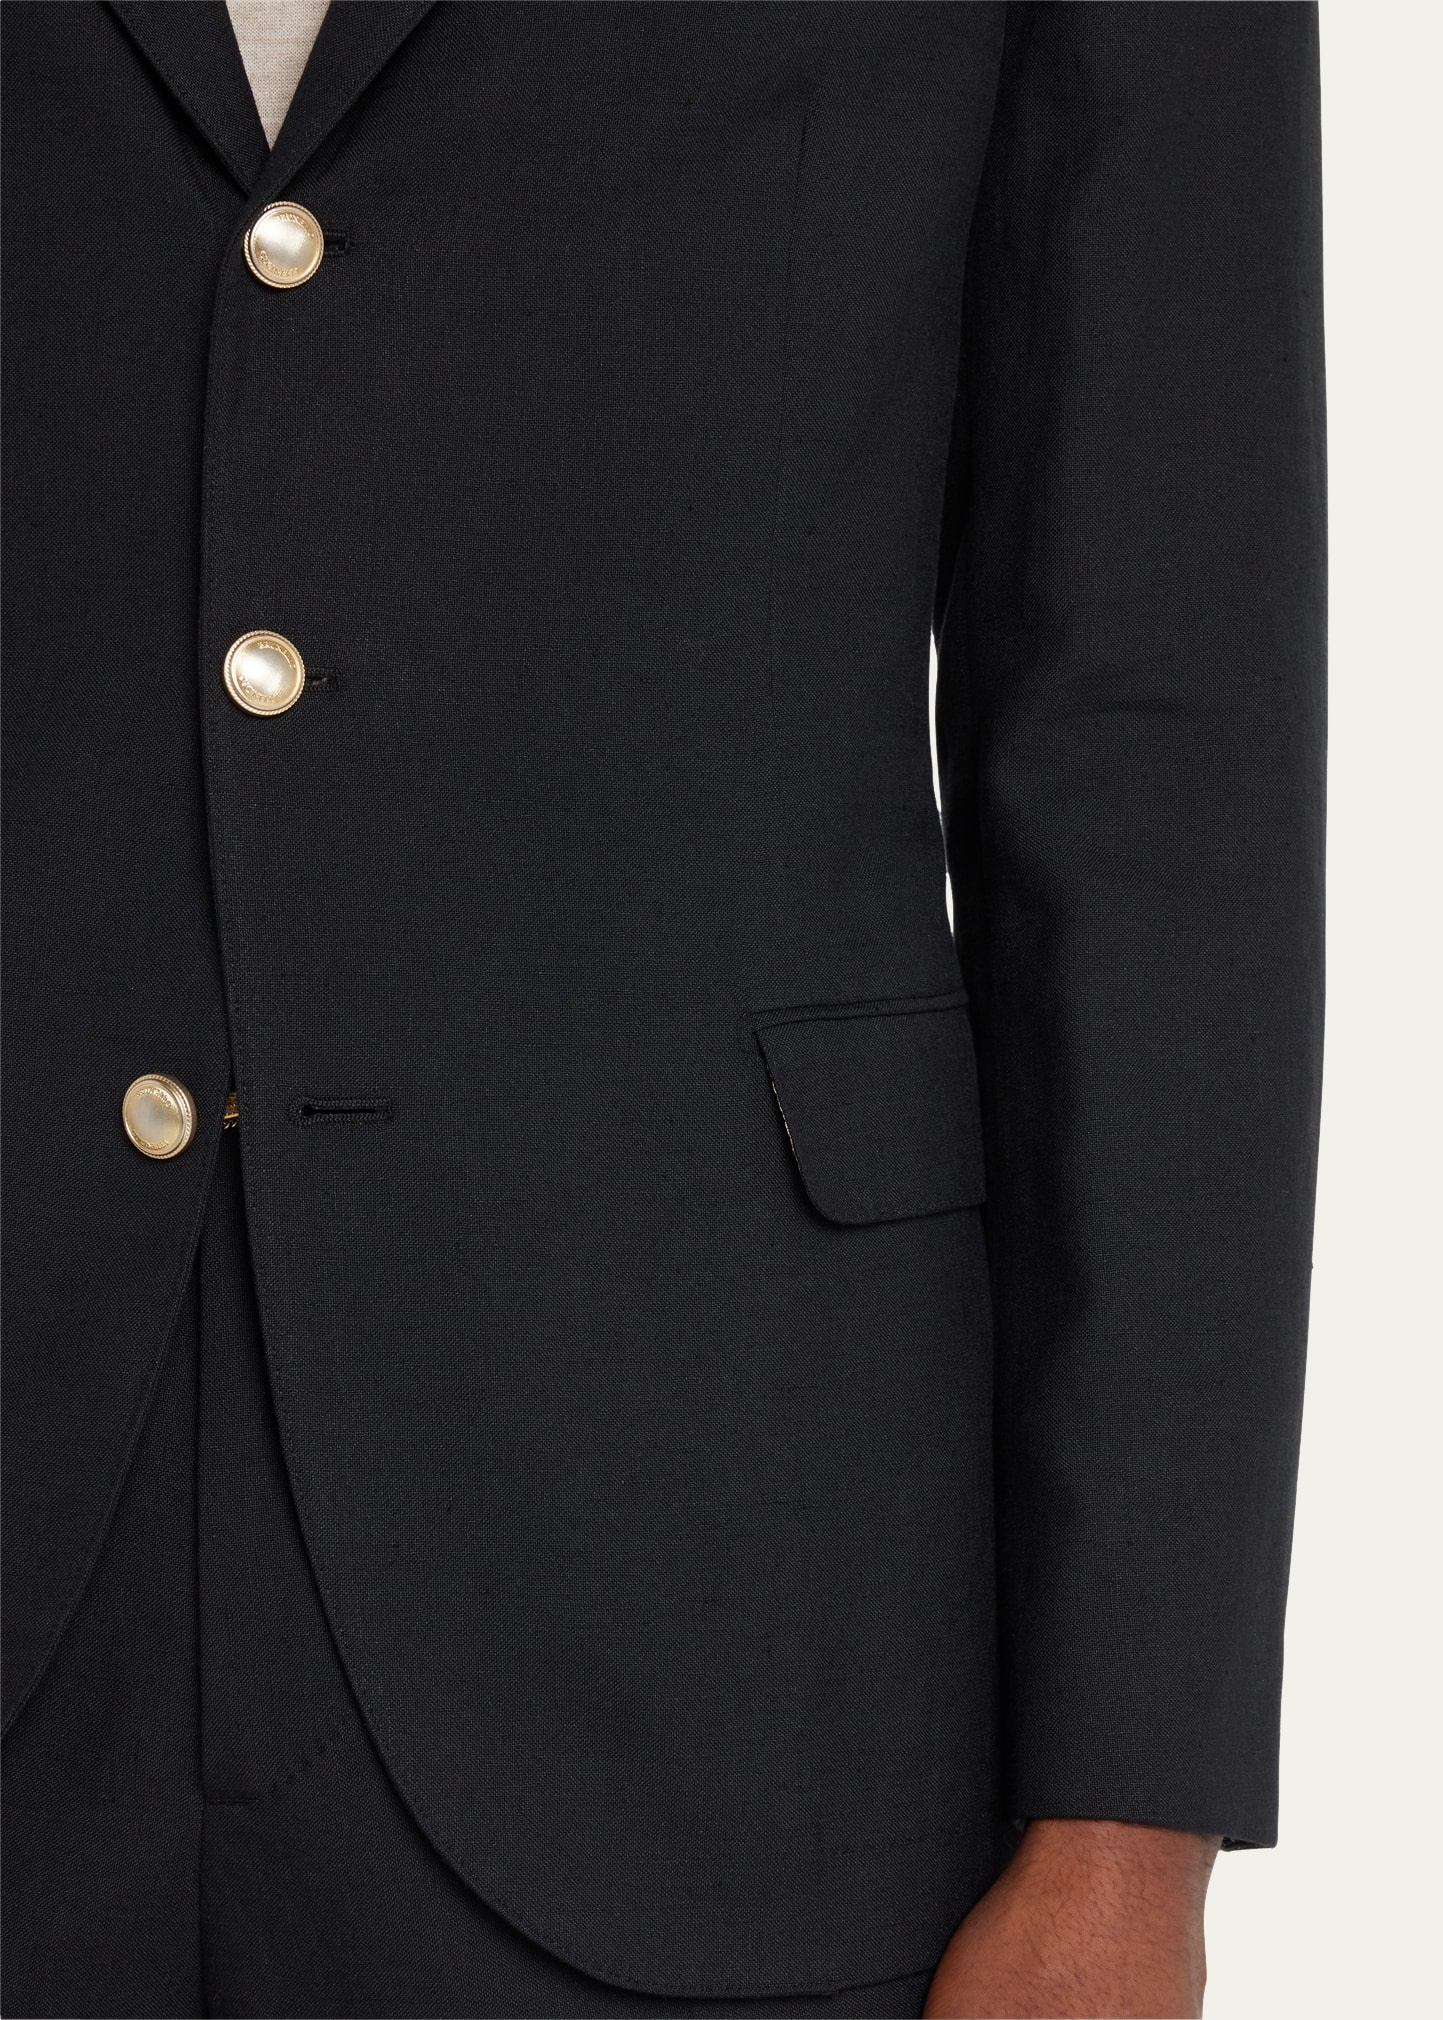 Men's Linen-Wool Solid Suit - 5